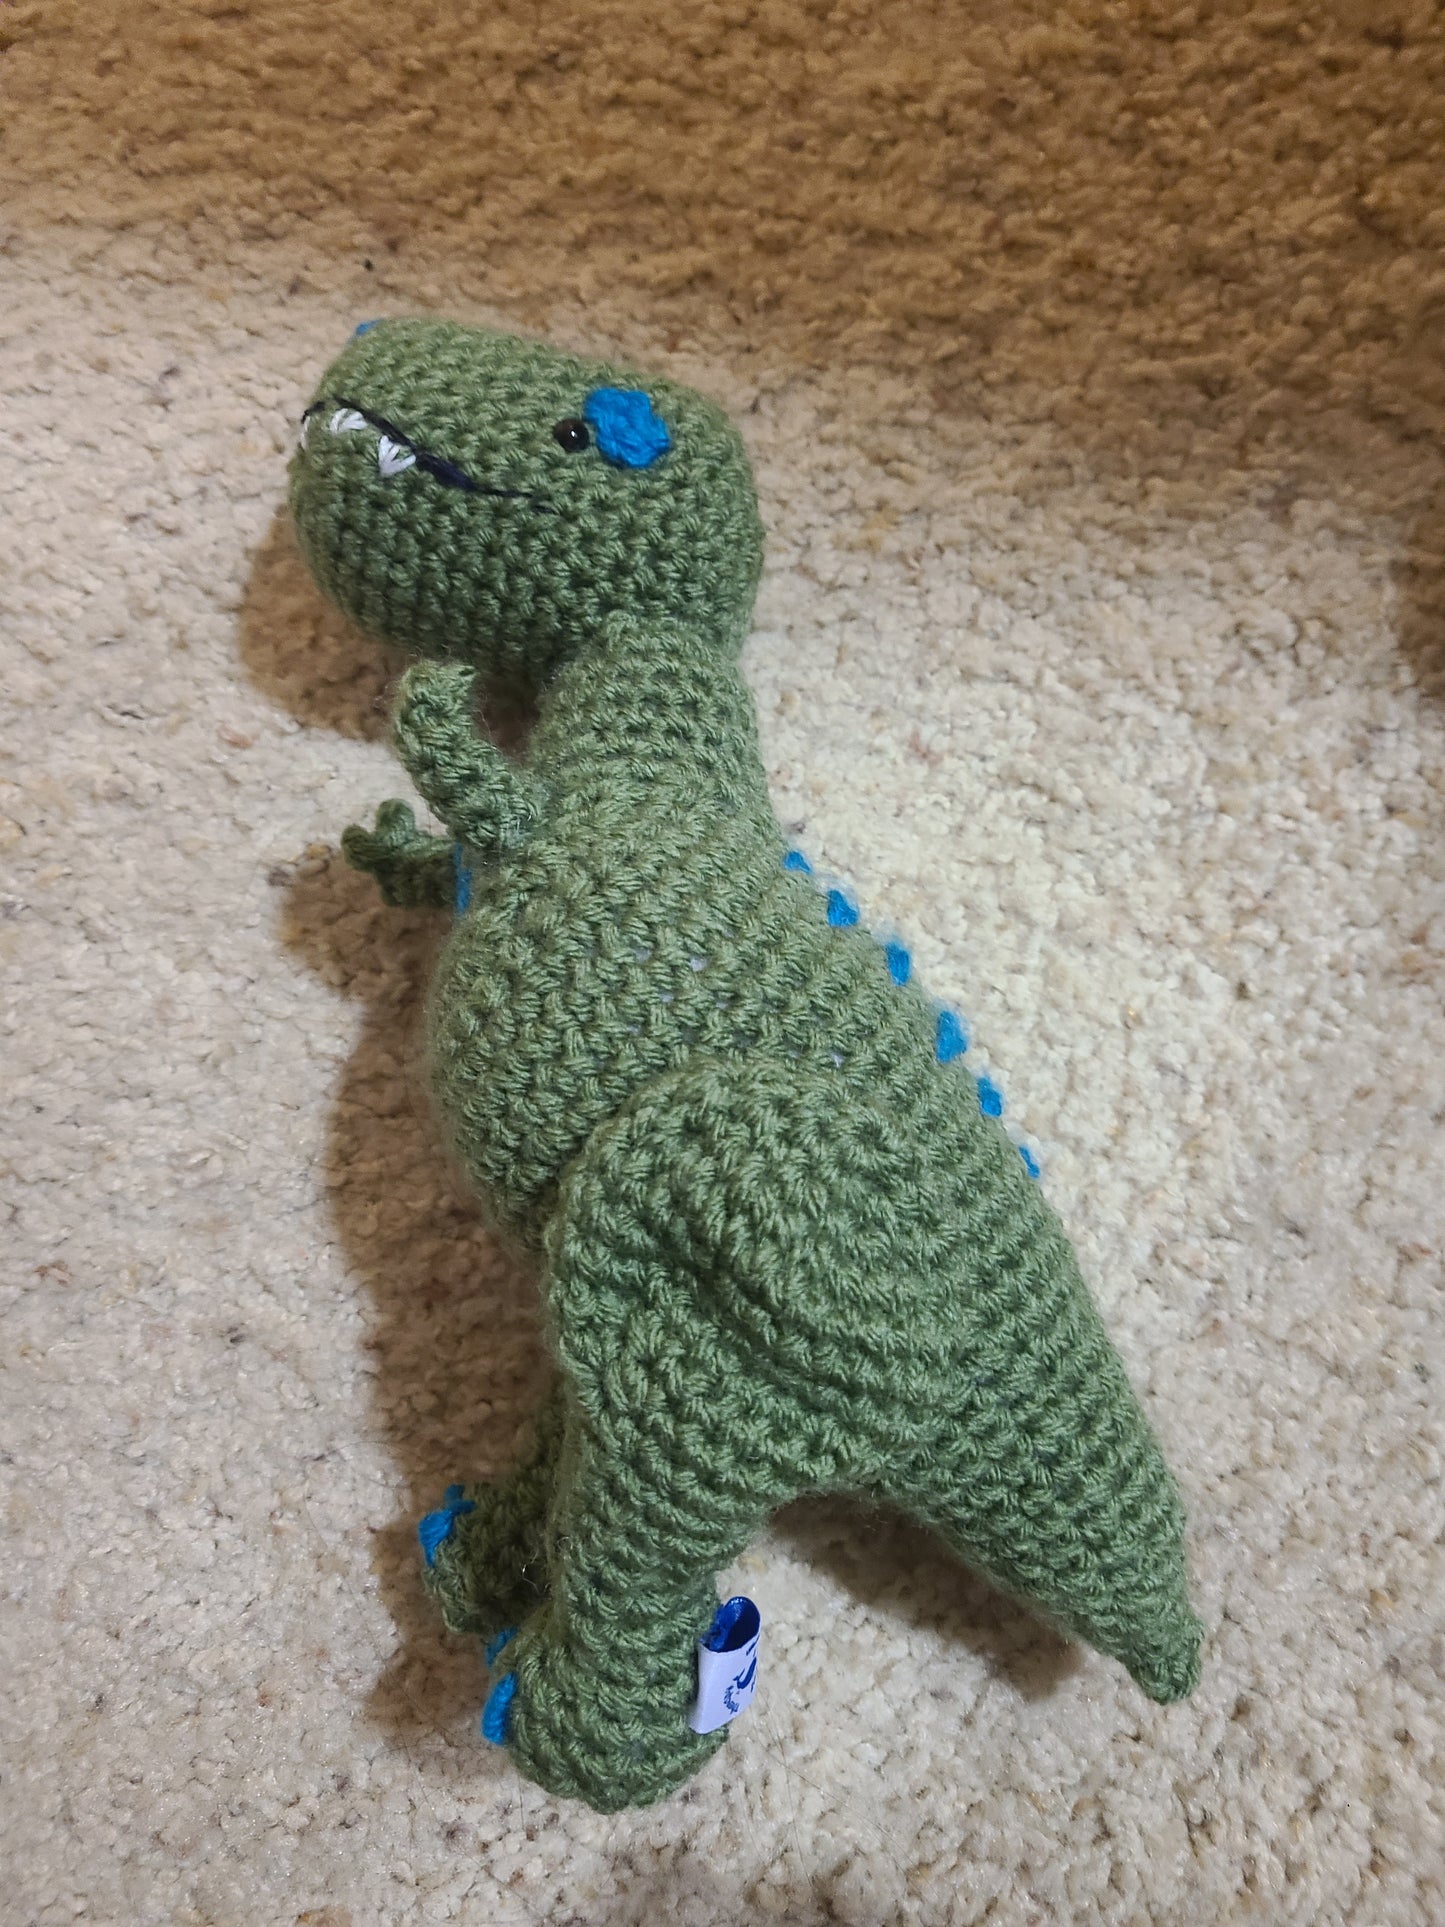 Custom Dinosaur